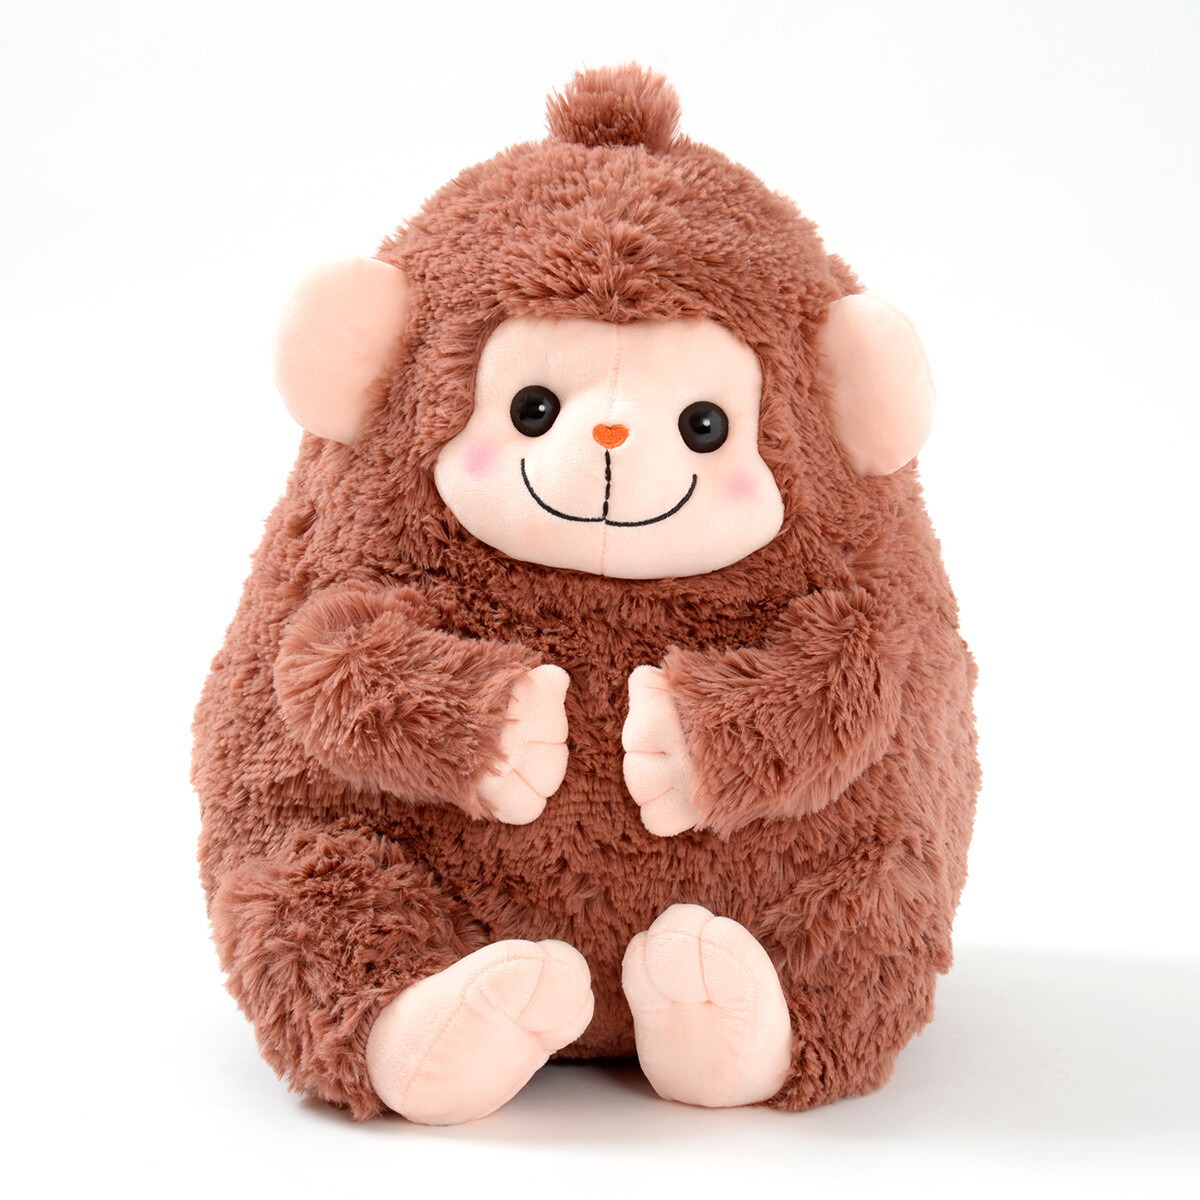 big monkey teddy bear for sale